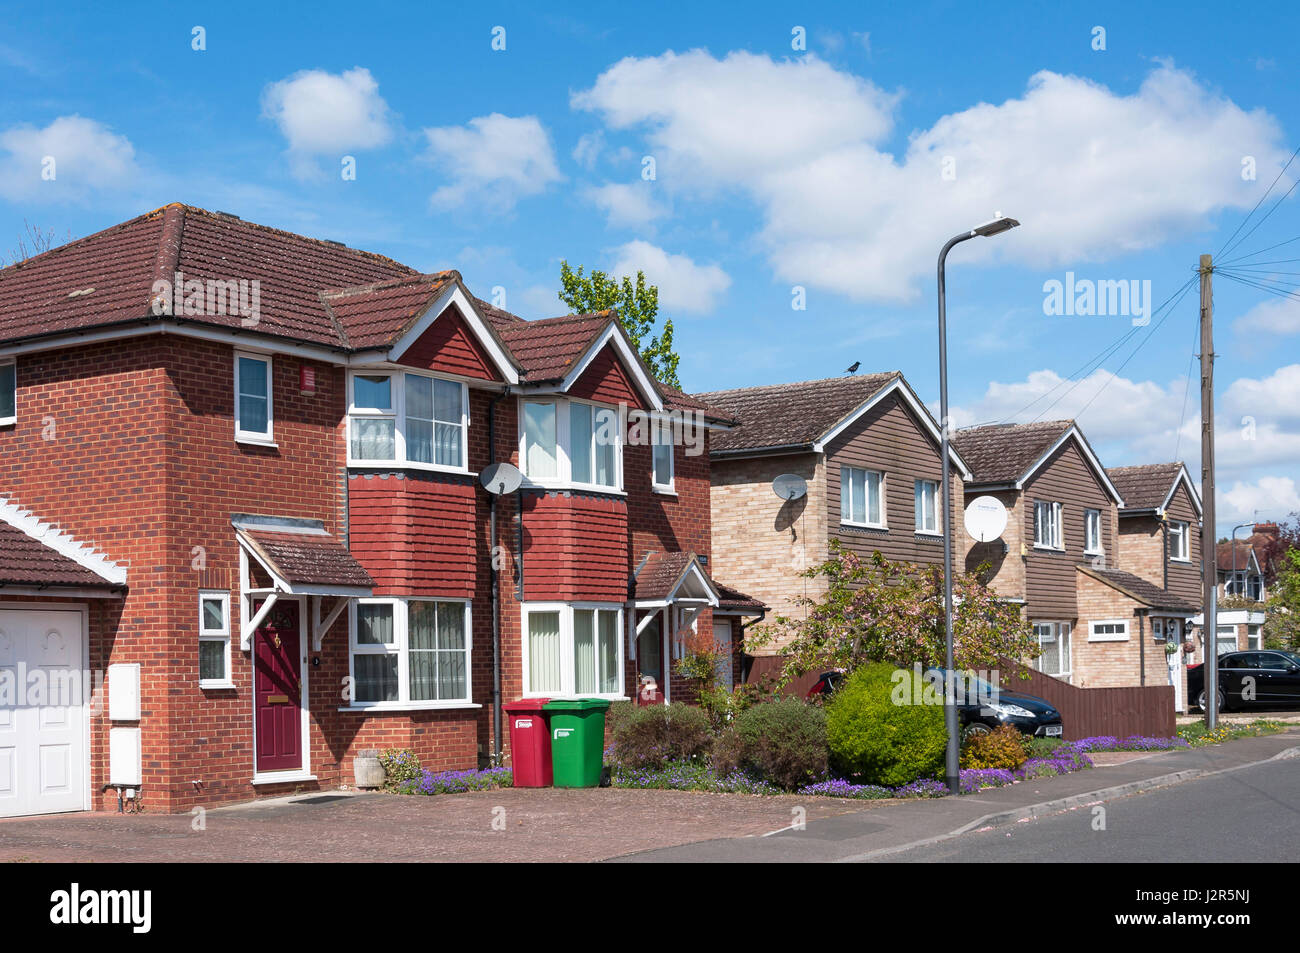 Maisons à louer sur l'Avenue, Slough, Berkshire, Angleterre, Royaume-Uni Banque D'Images